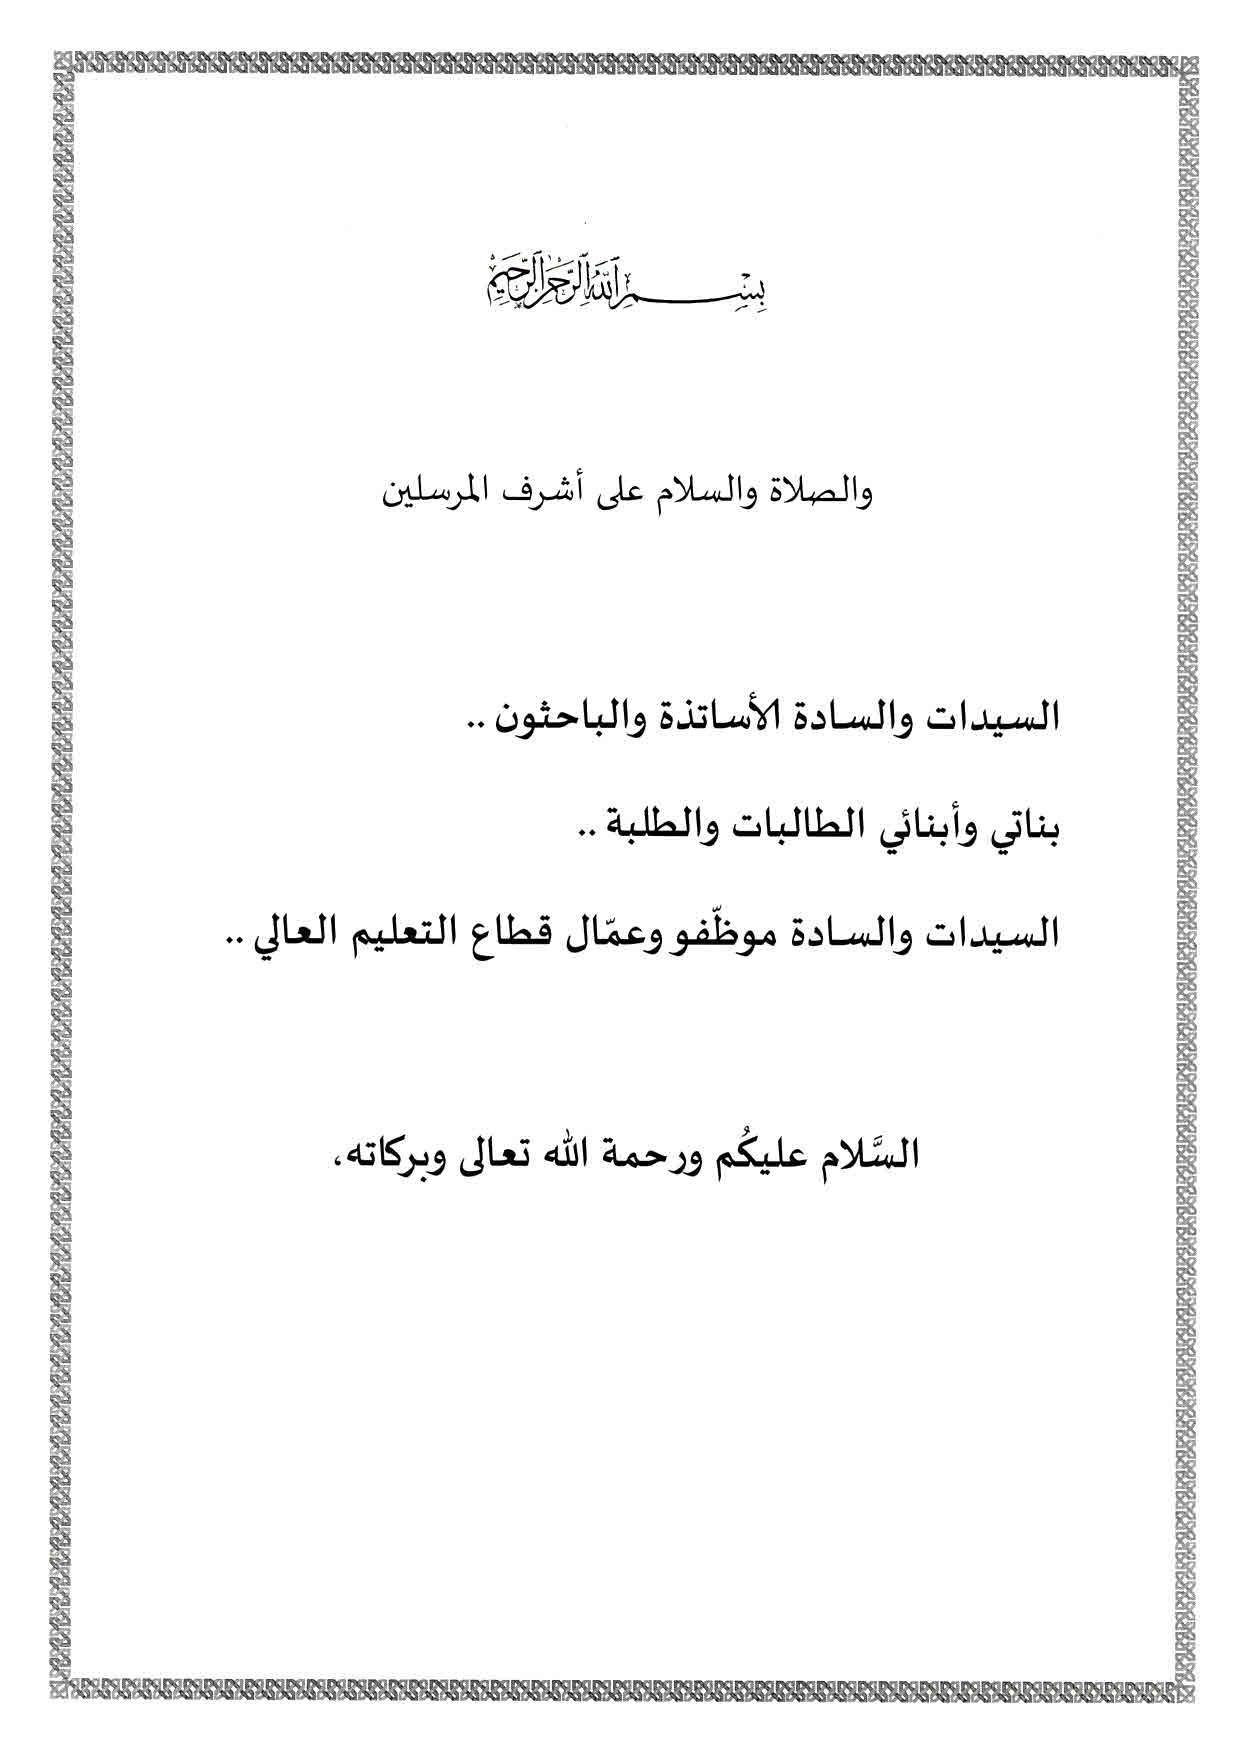 رسالة رئيس الجمهورية السيد عبد المجيد تبون بمناسبة افتتاح السنة الجامعية 2021 page 002